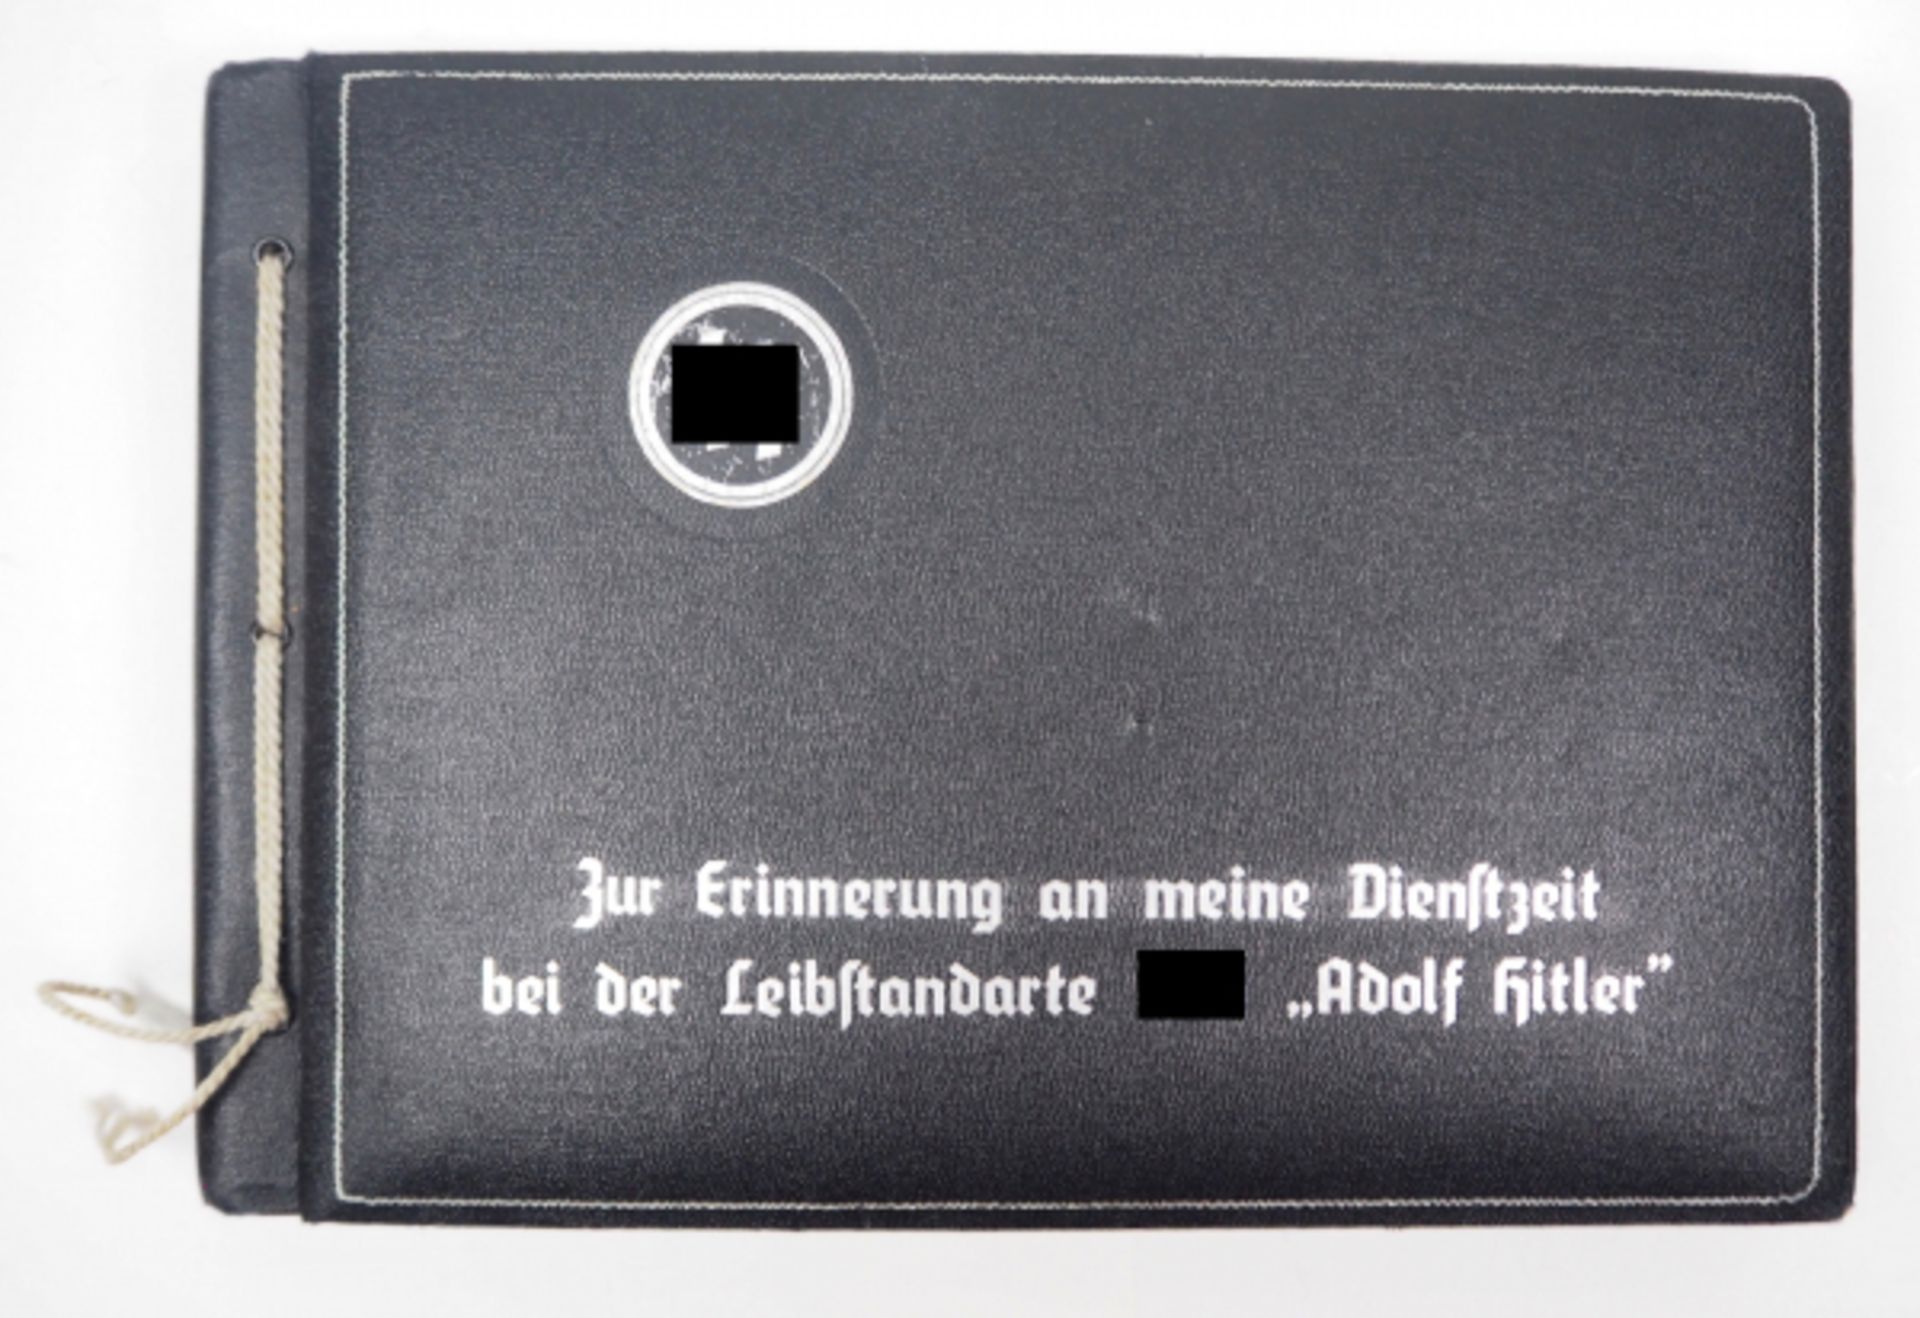 Fotoalbum eines Angehörigen der Leibstandarte Adolf Hitler.Schwarzer Einband mit silberner